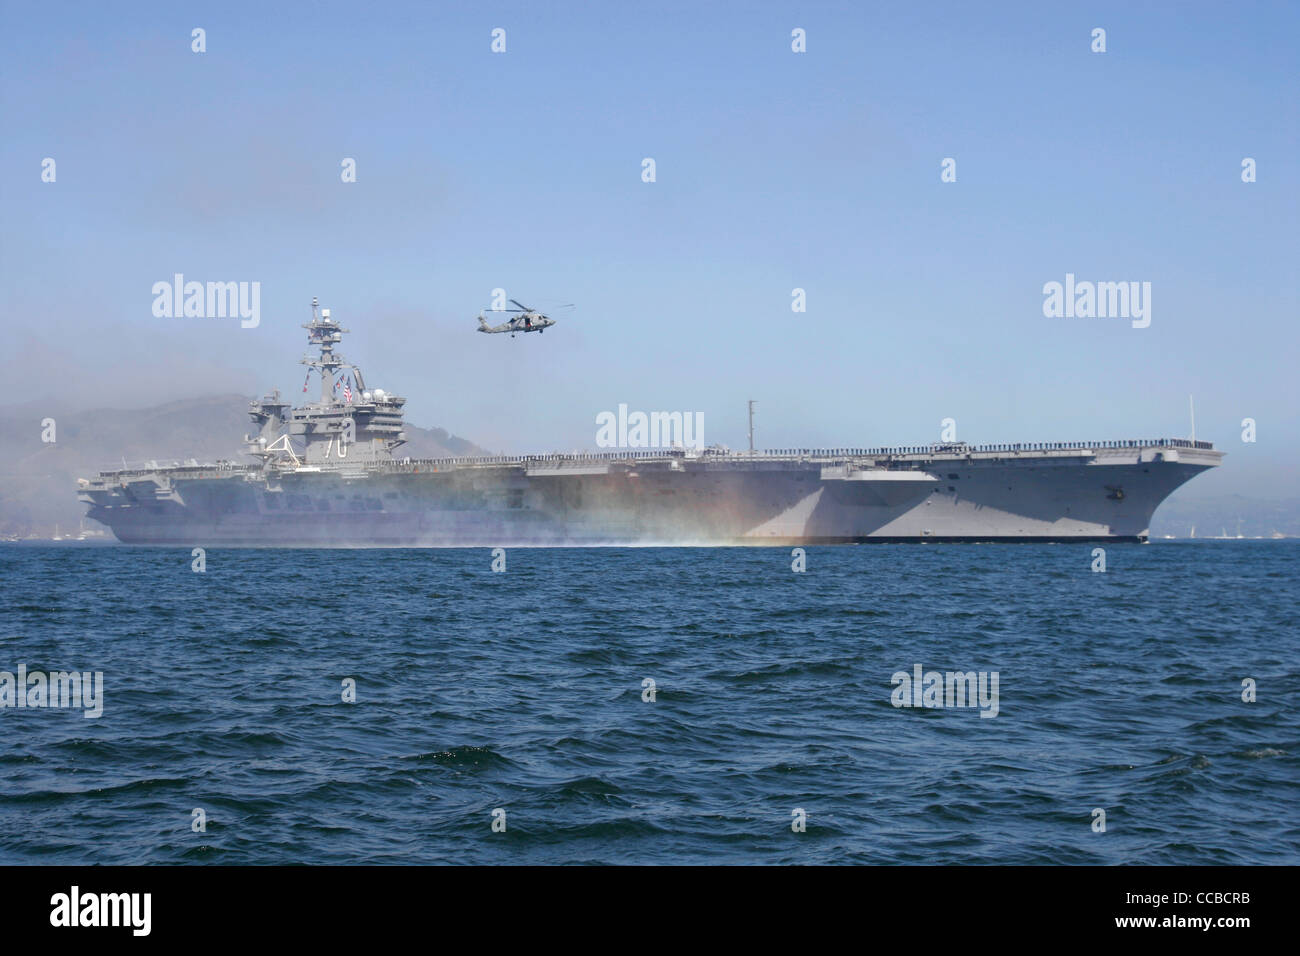 Nimitz class aircraft carrier USS Carl Vinson (CVN 70) enters San Francisco Bay. Stock Photo